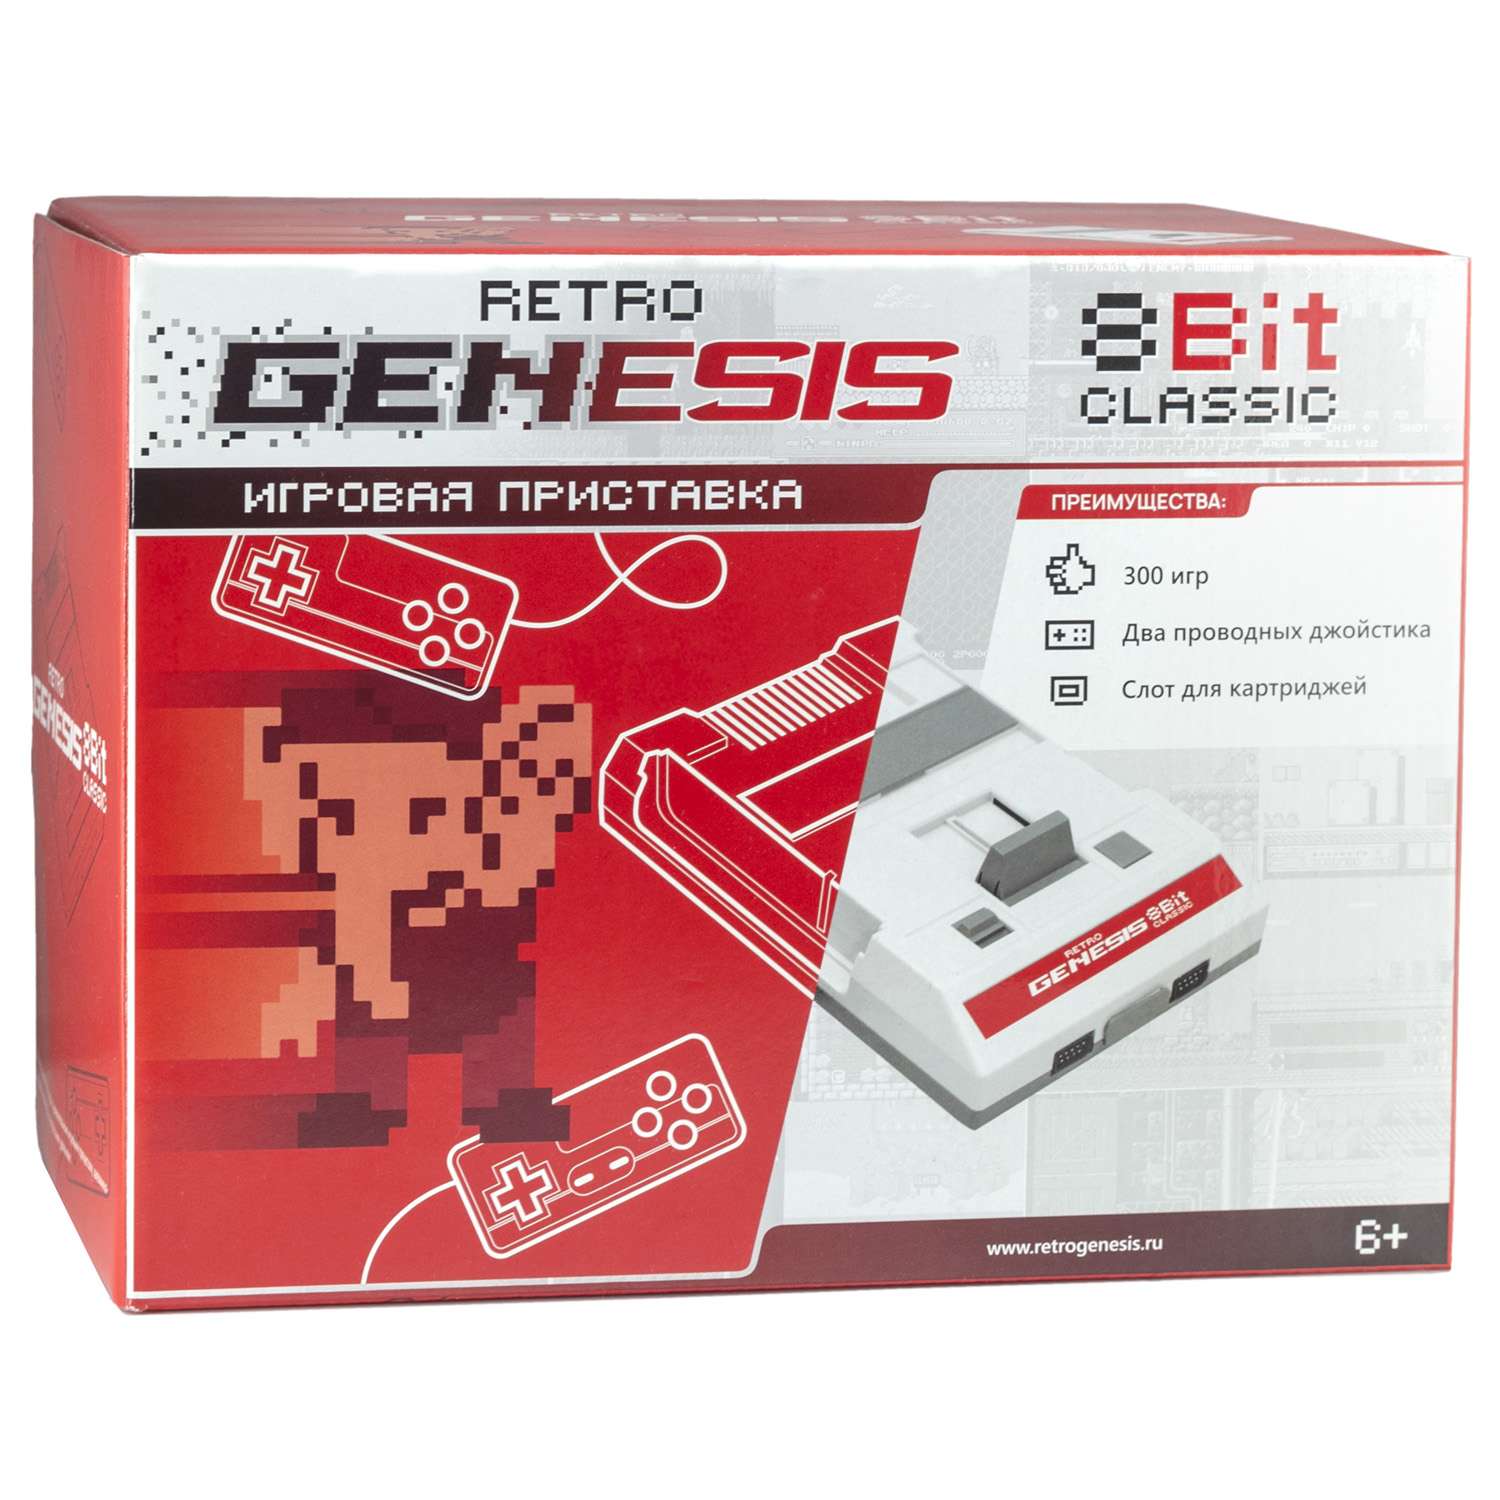 Игровая приставка для детей Retro Genesis 8 Bit Classic + 300 игр AV 2 проводных джойстика - фото 2